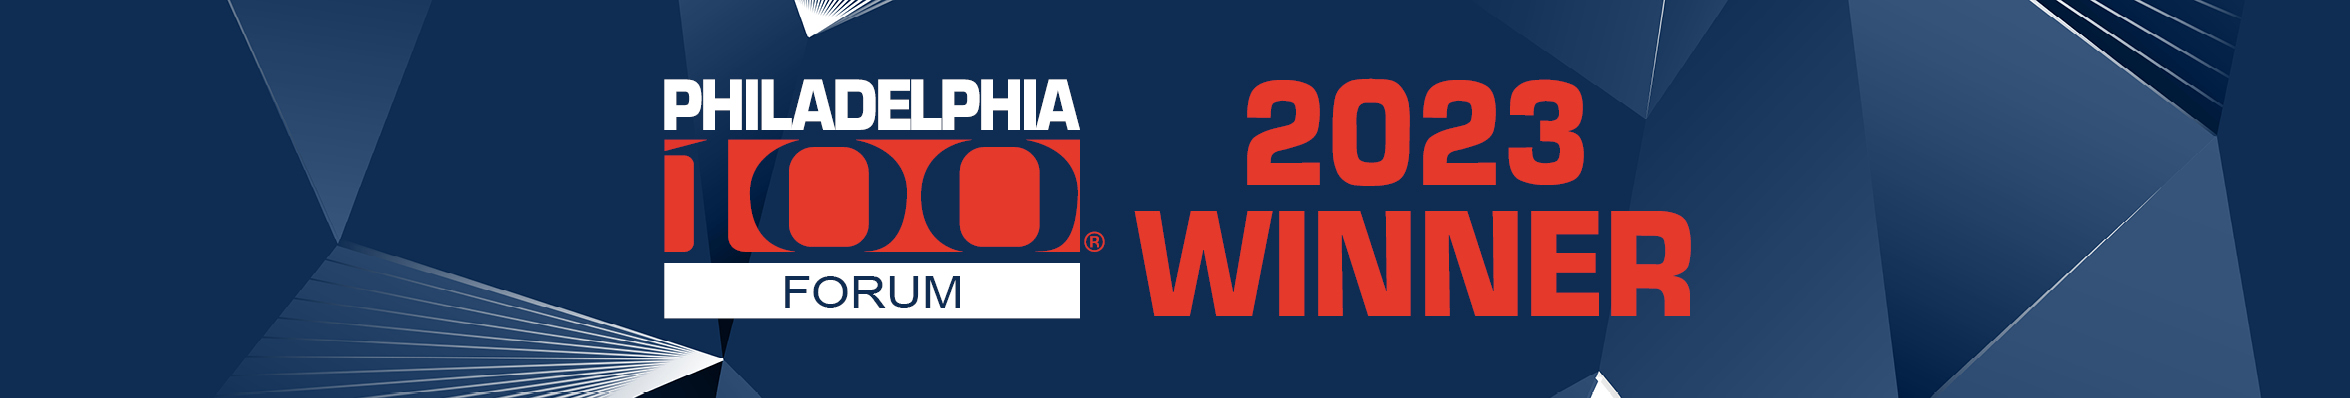 2023 Philadelphia 100 Winner